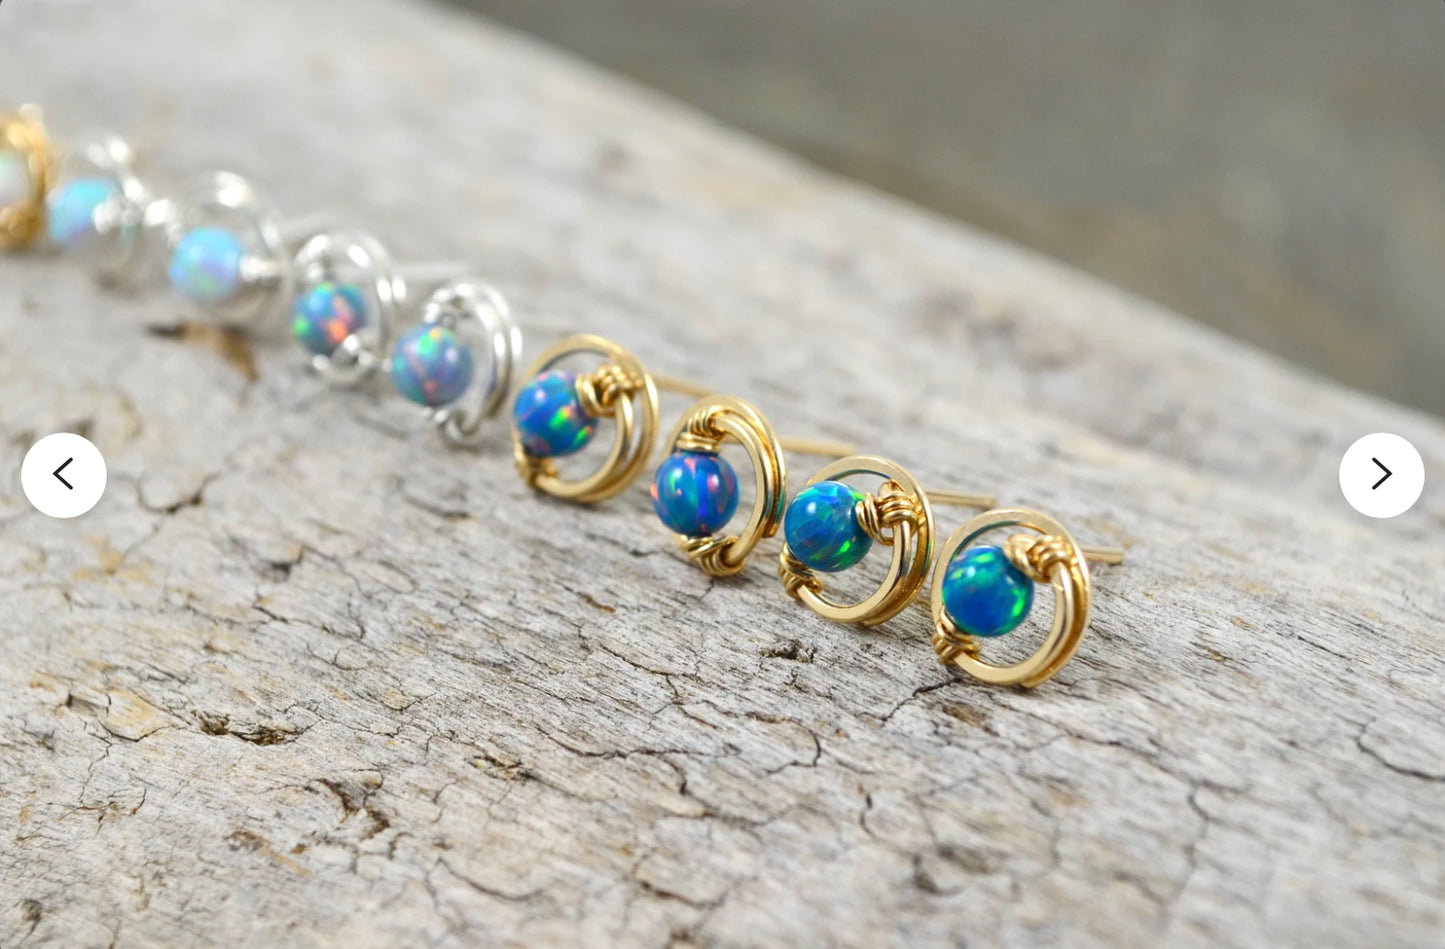 Opal Gemstone Stud earrings in Sterling Silver or 14k Gold Filled